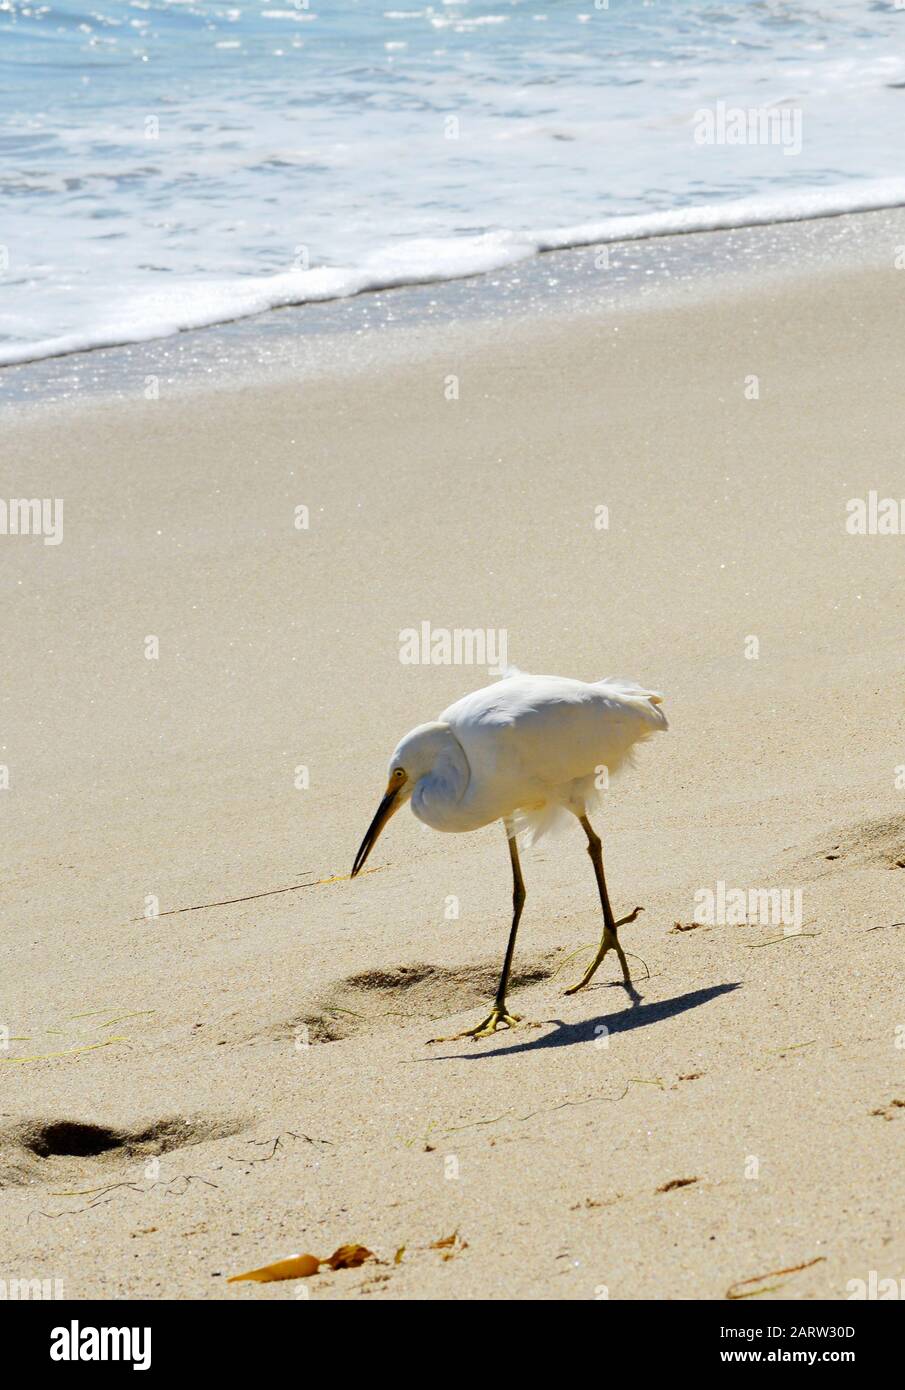 Weisser Kranich am Strand von Malibu Kalifornien Foto Stock